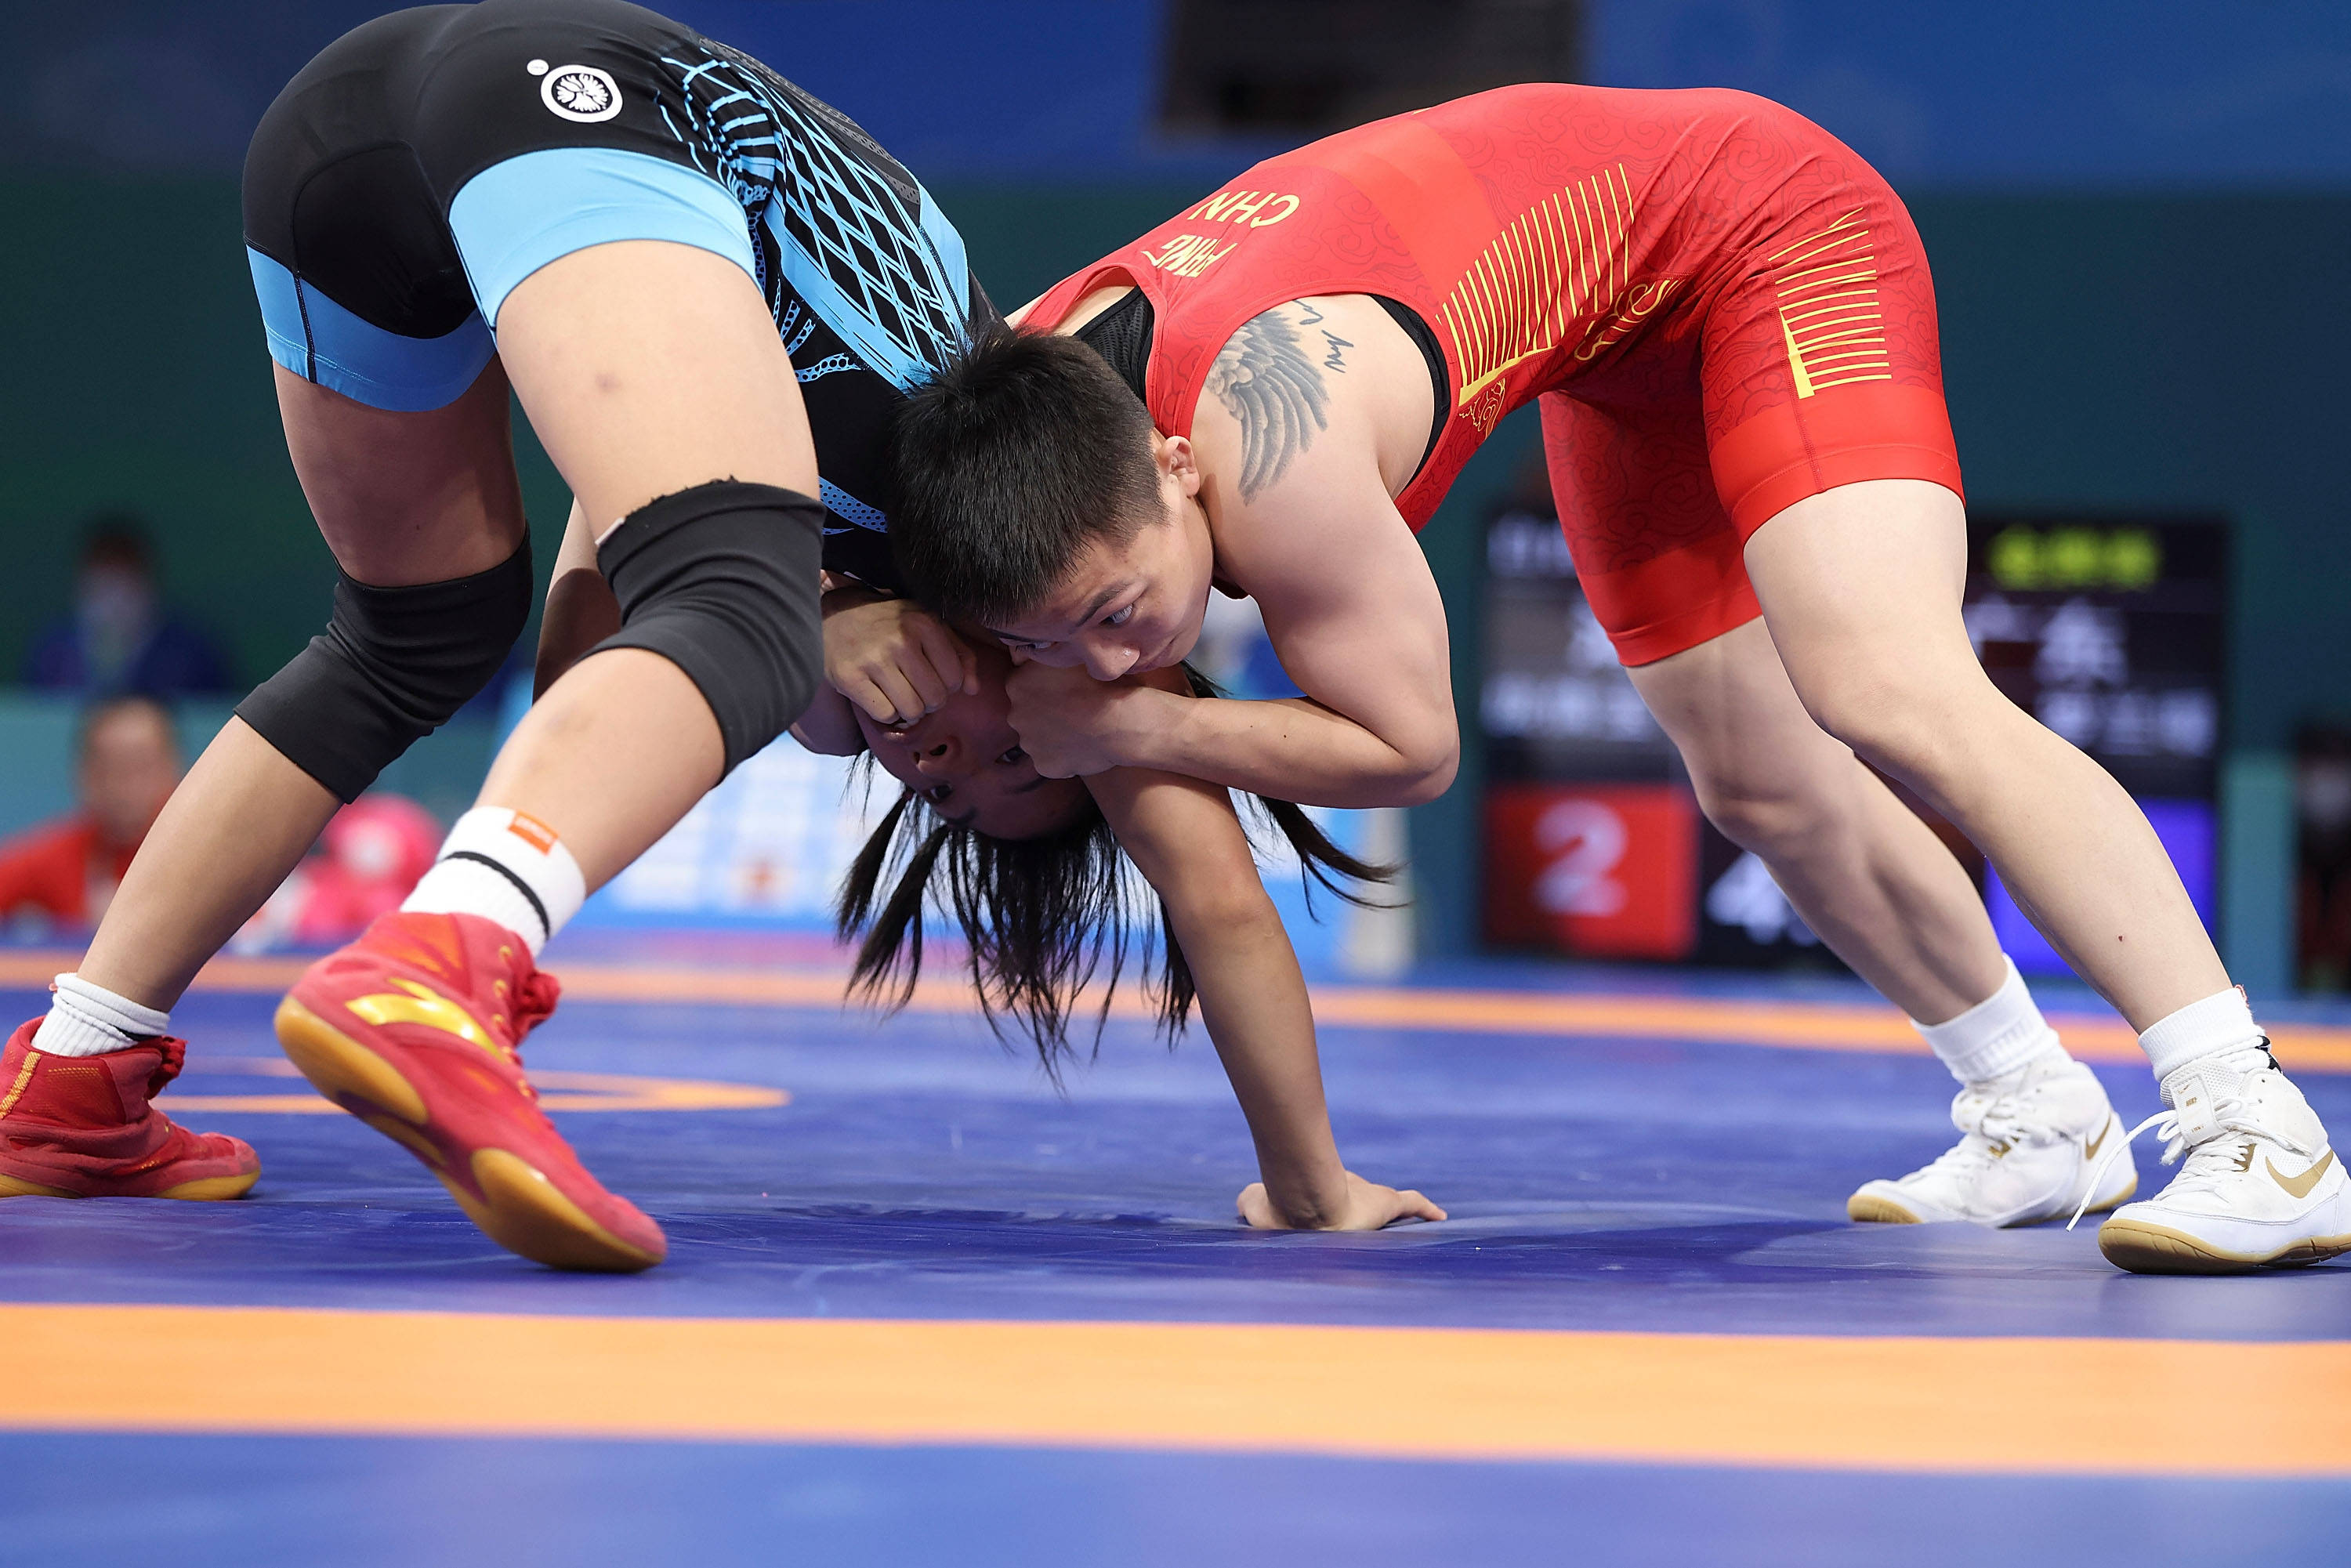 谁说女子不如男！全国国际式摔跤锦标赛开启女子摔跤赛事-新闻中心-温州网